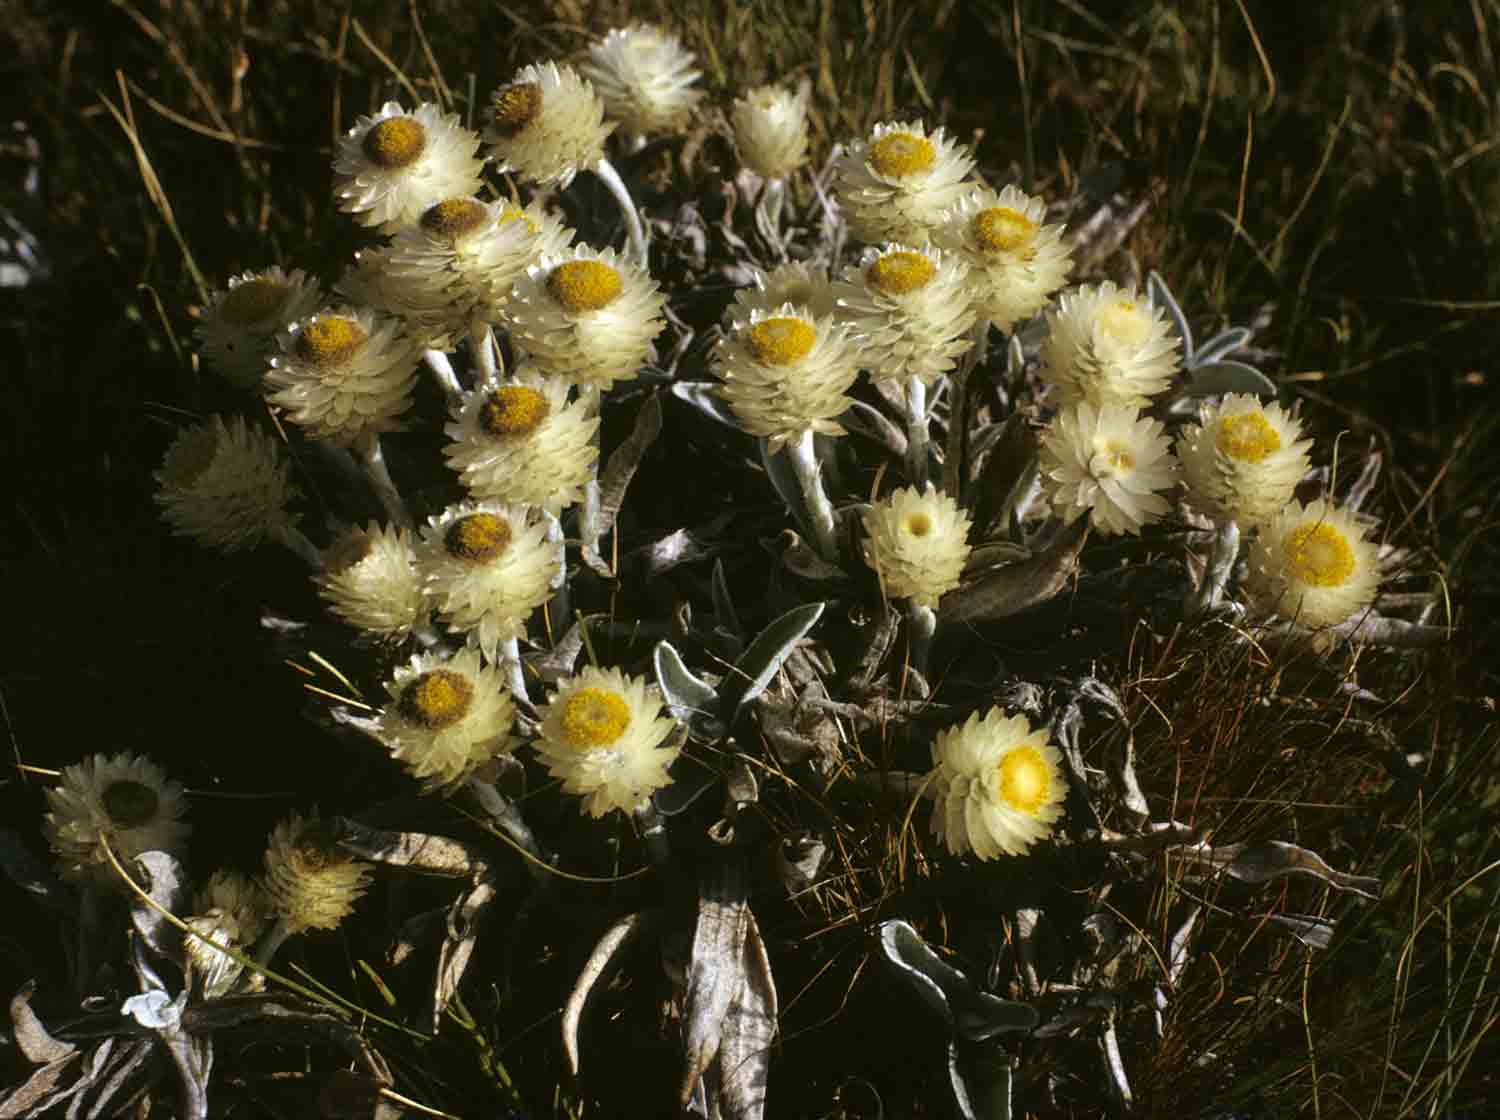 Helichrysum swynnertonii